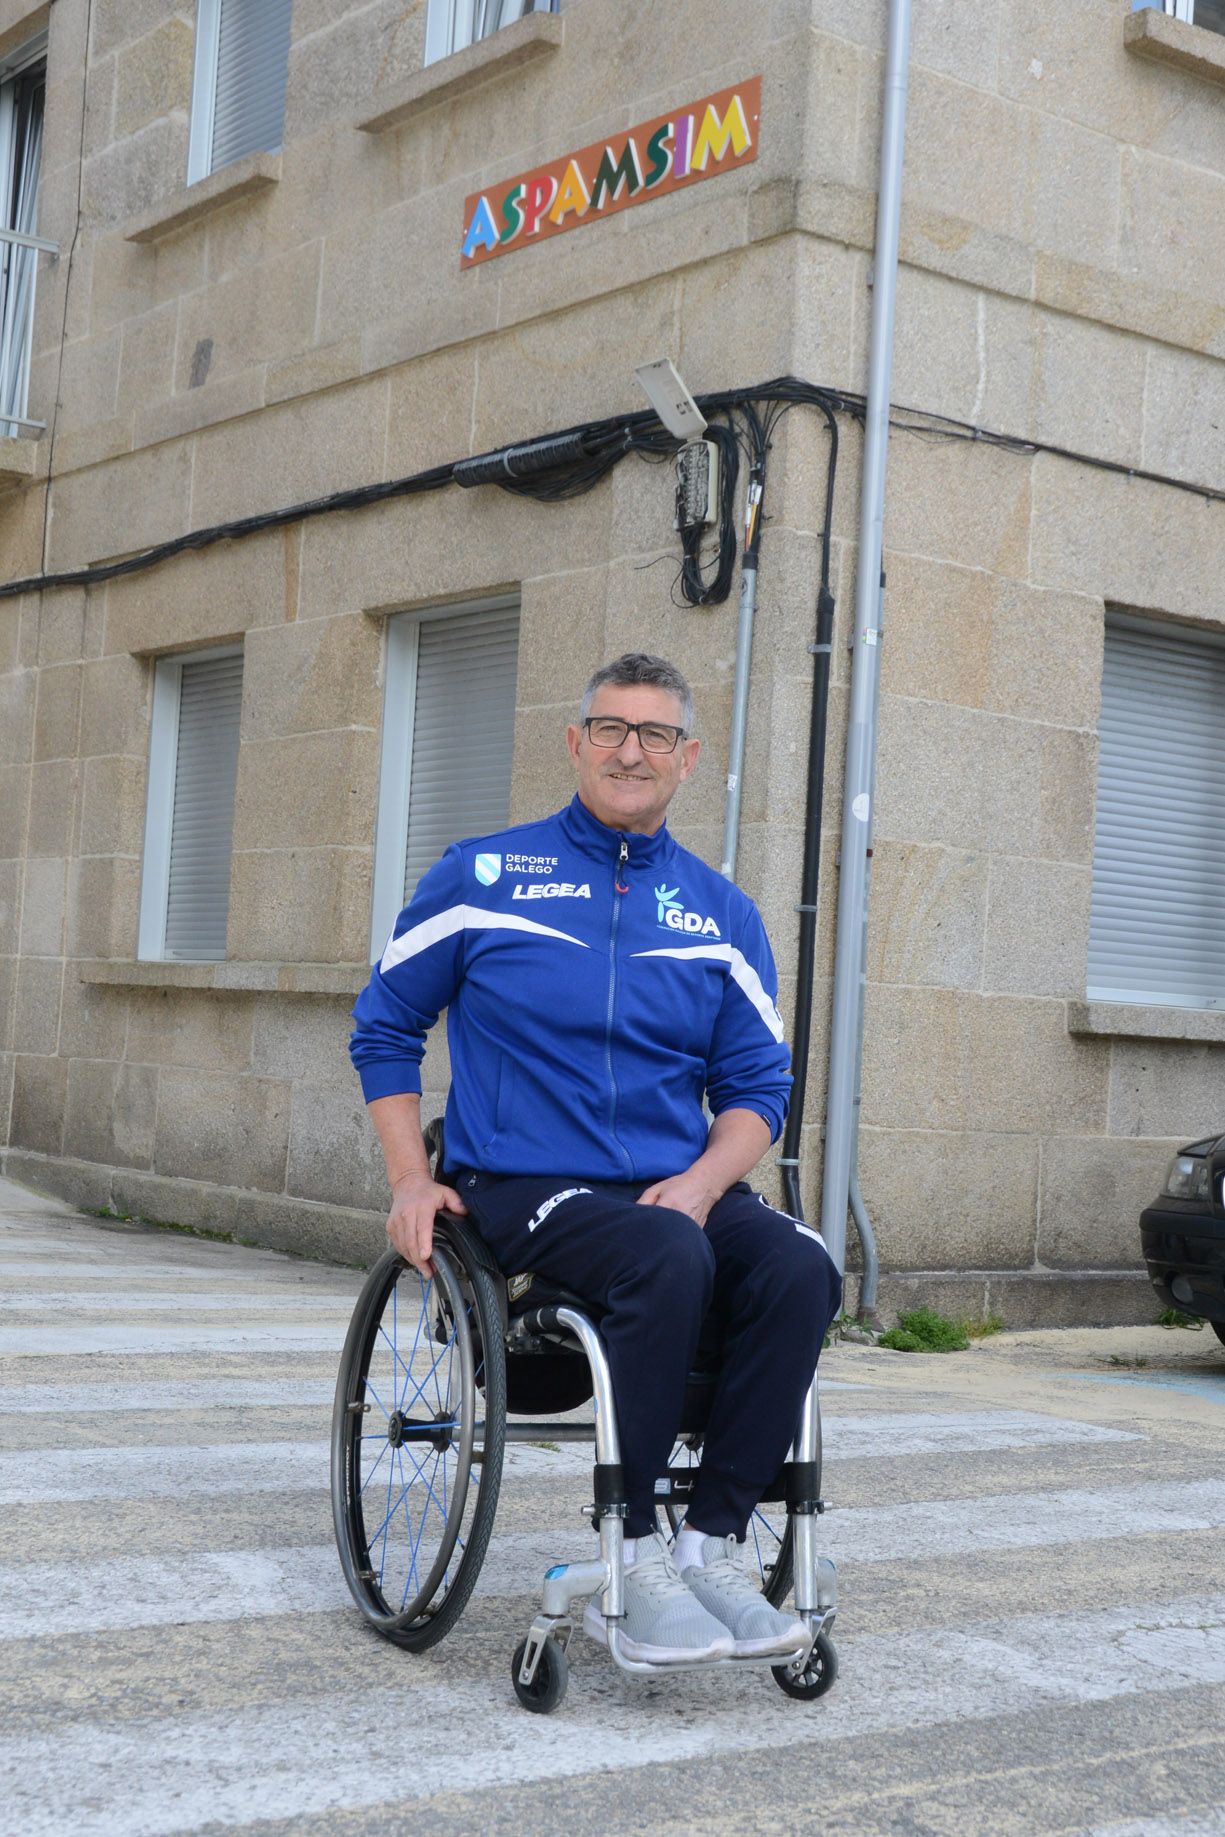 El deportista paralímpico, ante la sede de Aspamsim en Cangas.